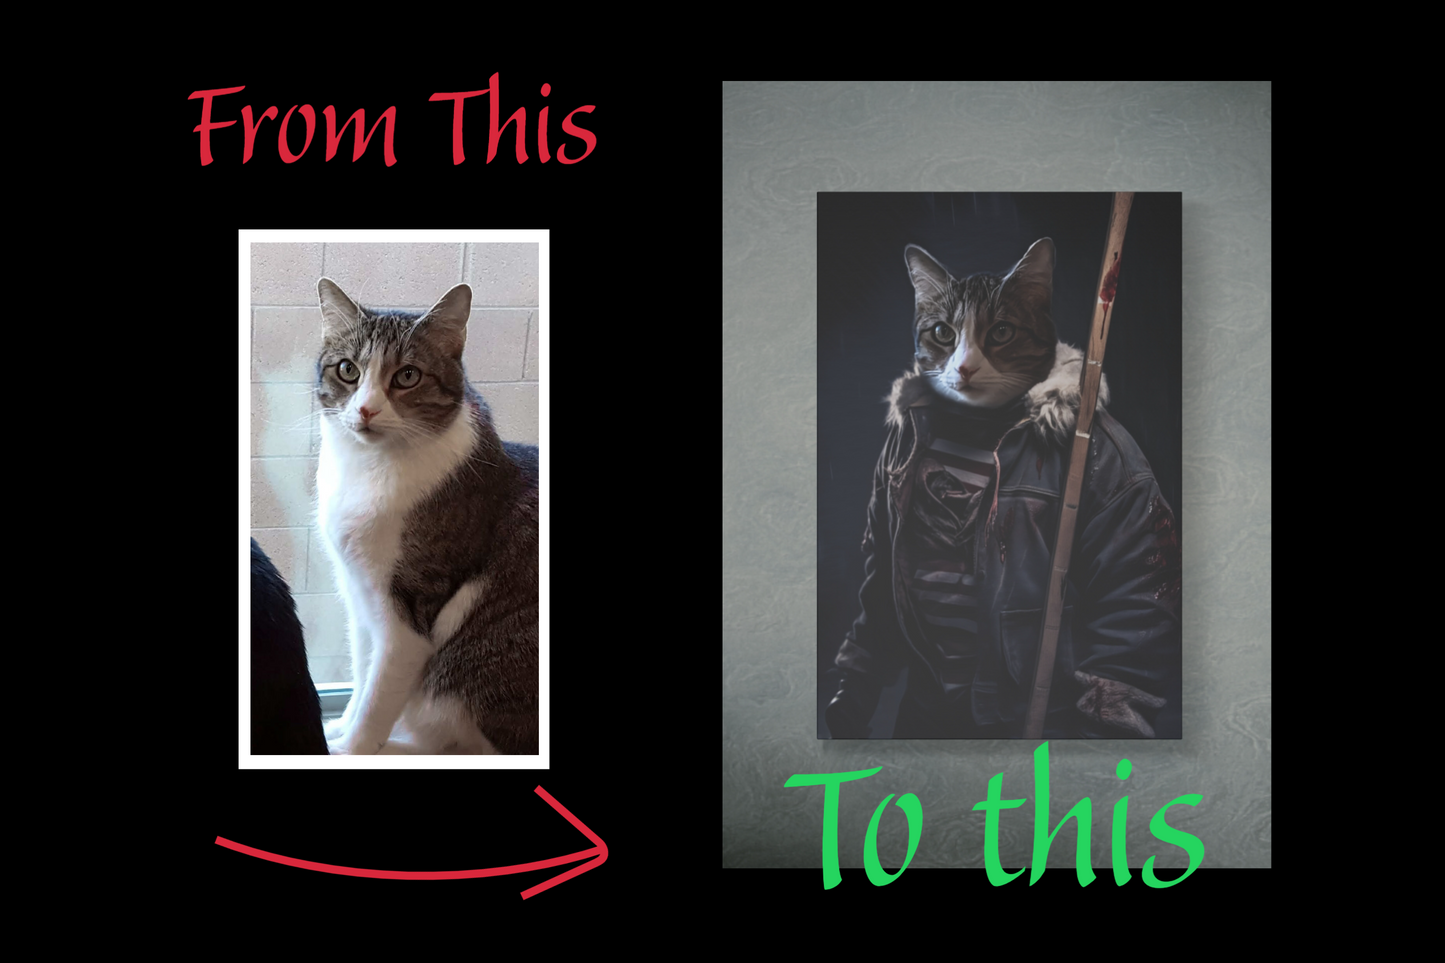 The Maniac Custom Creepy Pet Portrait Personalized Pet portrait digital download killer pet portrait gift for